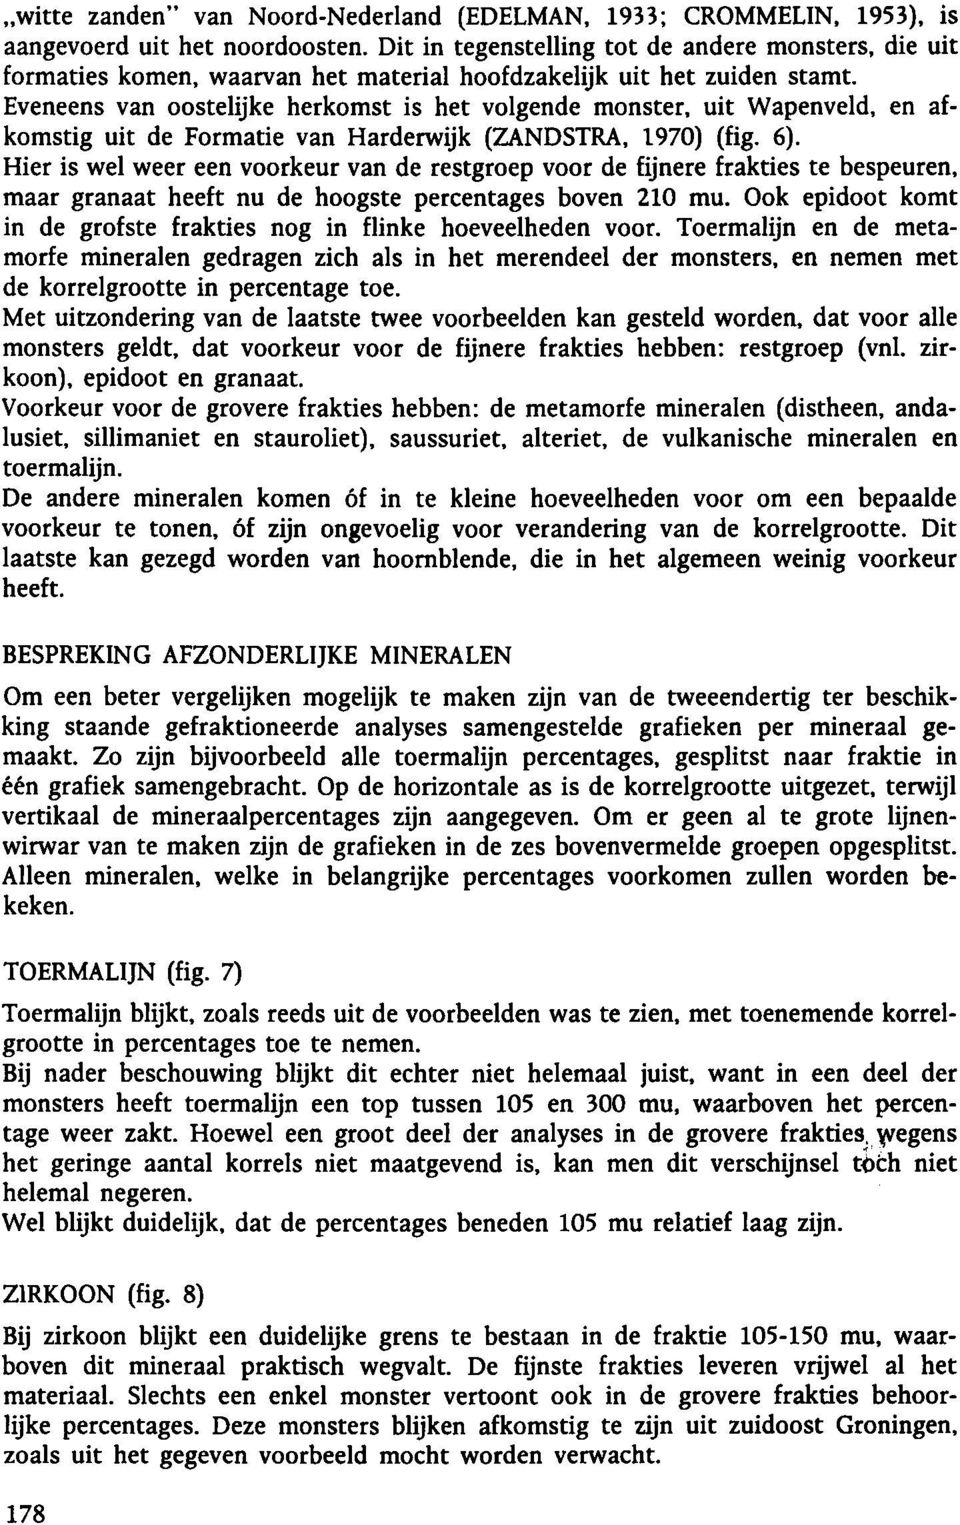 Eveneens van oostelijke herkomst is het volgende monster, uit Wapenveld, en afkomstig uit de Formatie van Harderwijk (ZANDSTRA, 1970) (fig. 6).